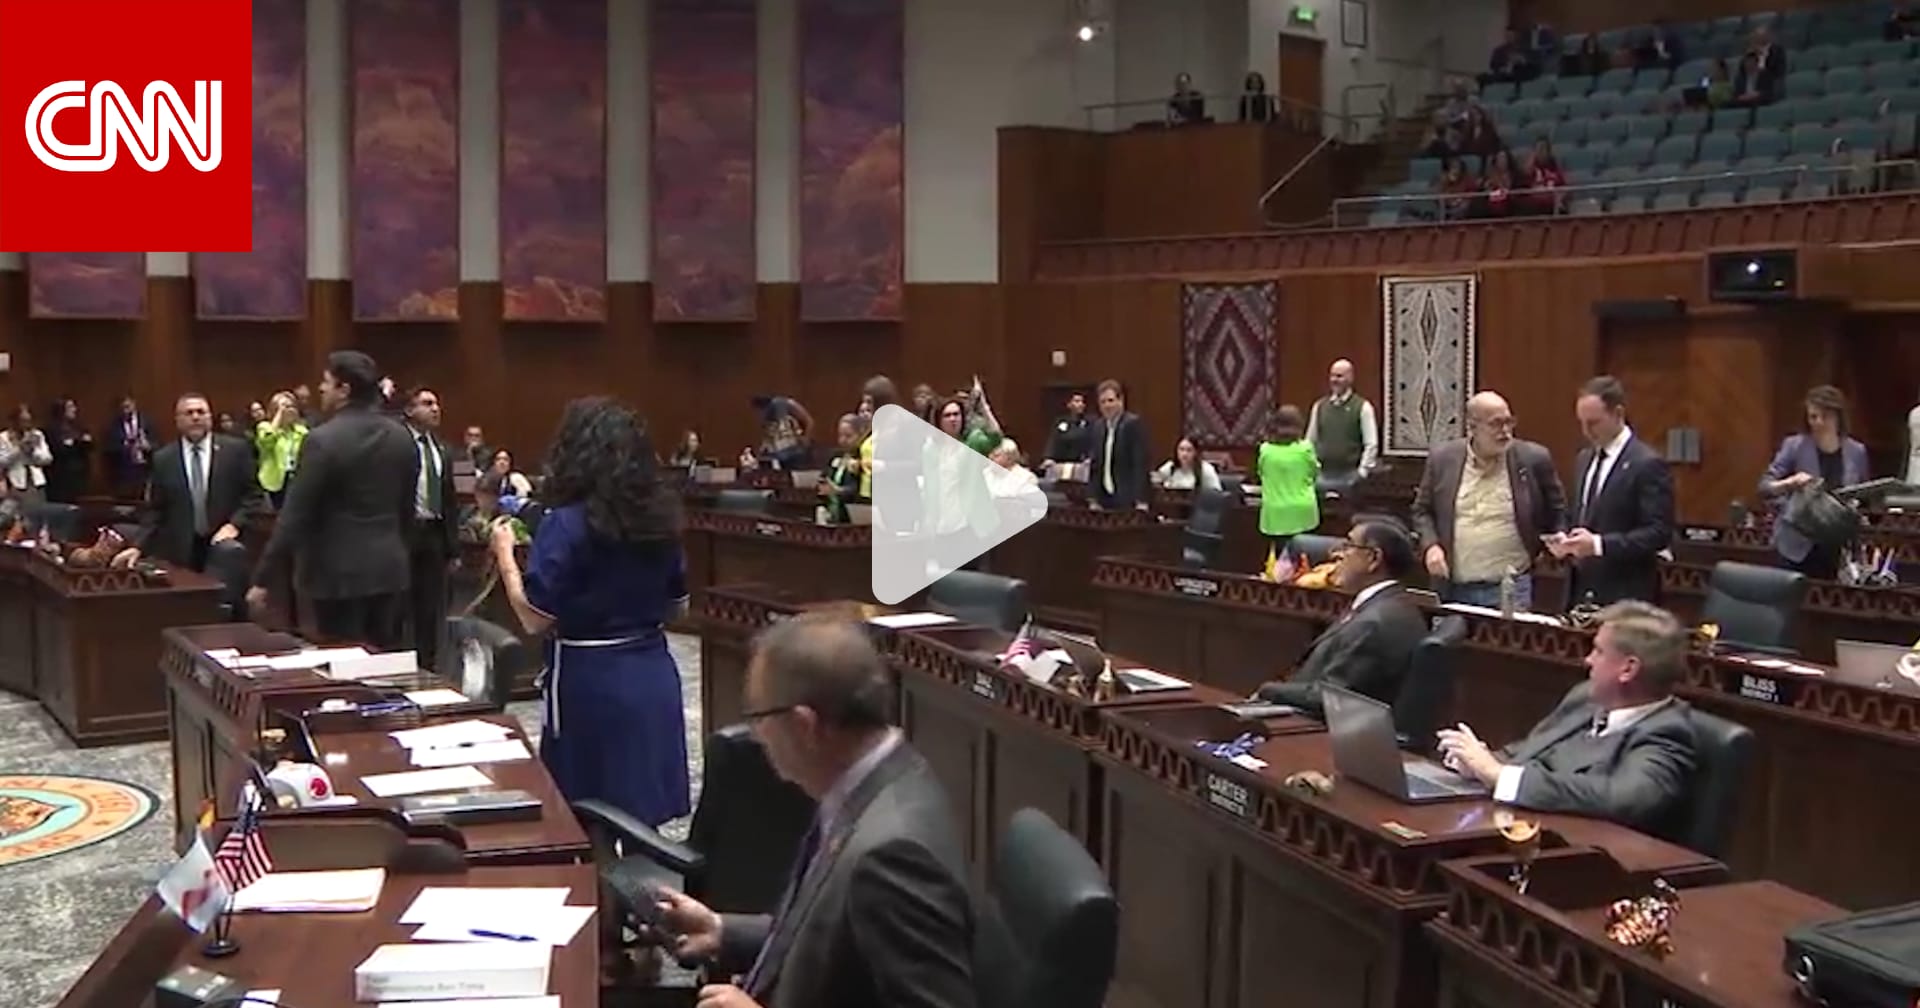 شاهد لحظة اندلاع فوضى في مجلس نواب أريزونا بسبب قانون حظر الإجهاض